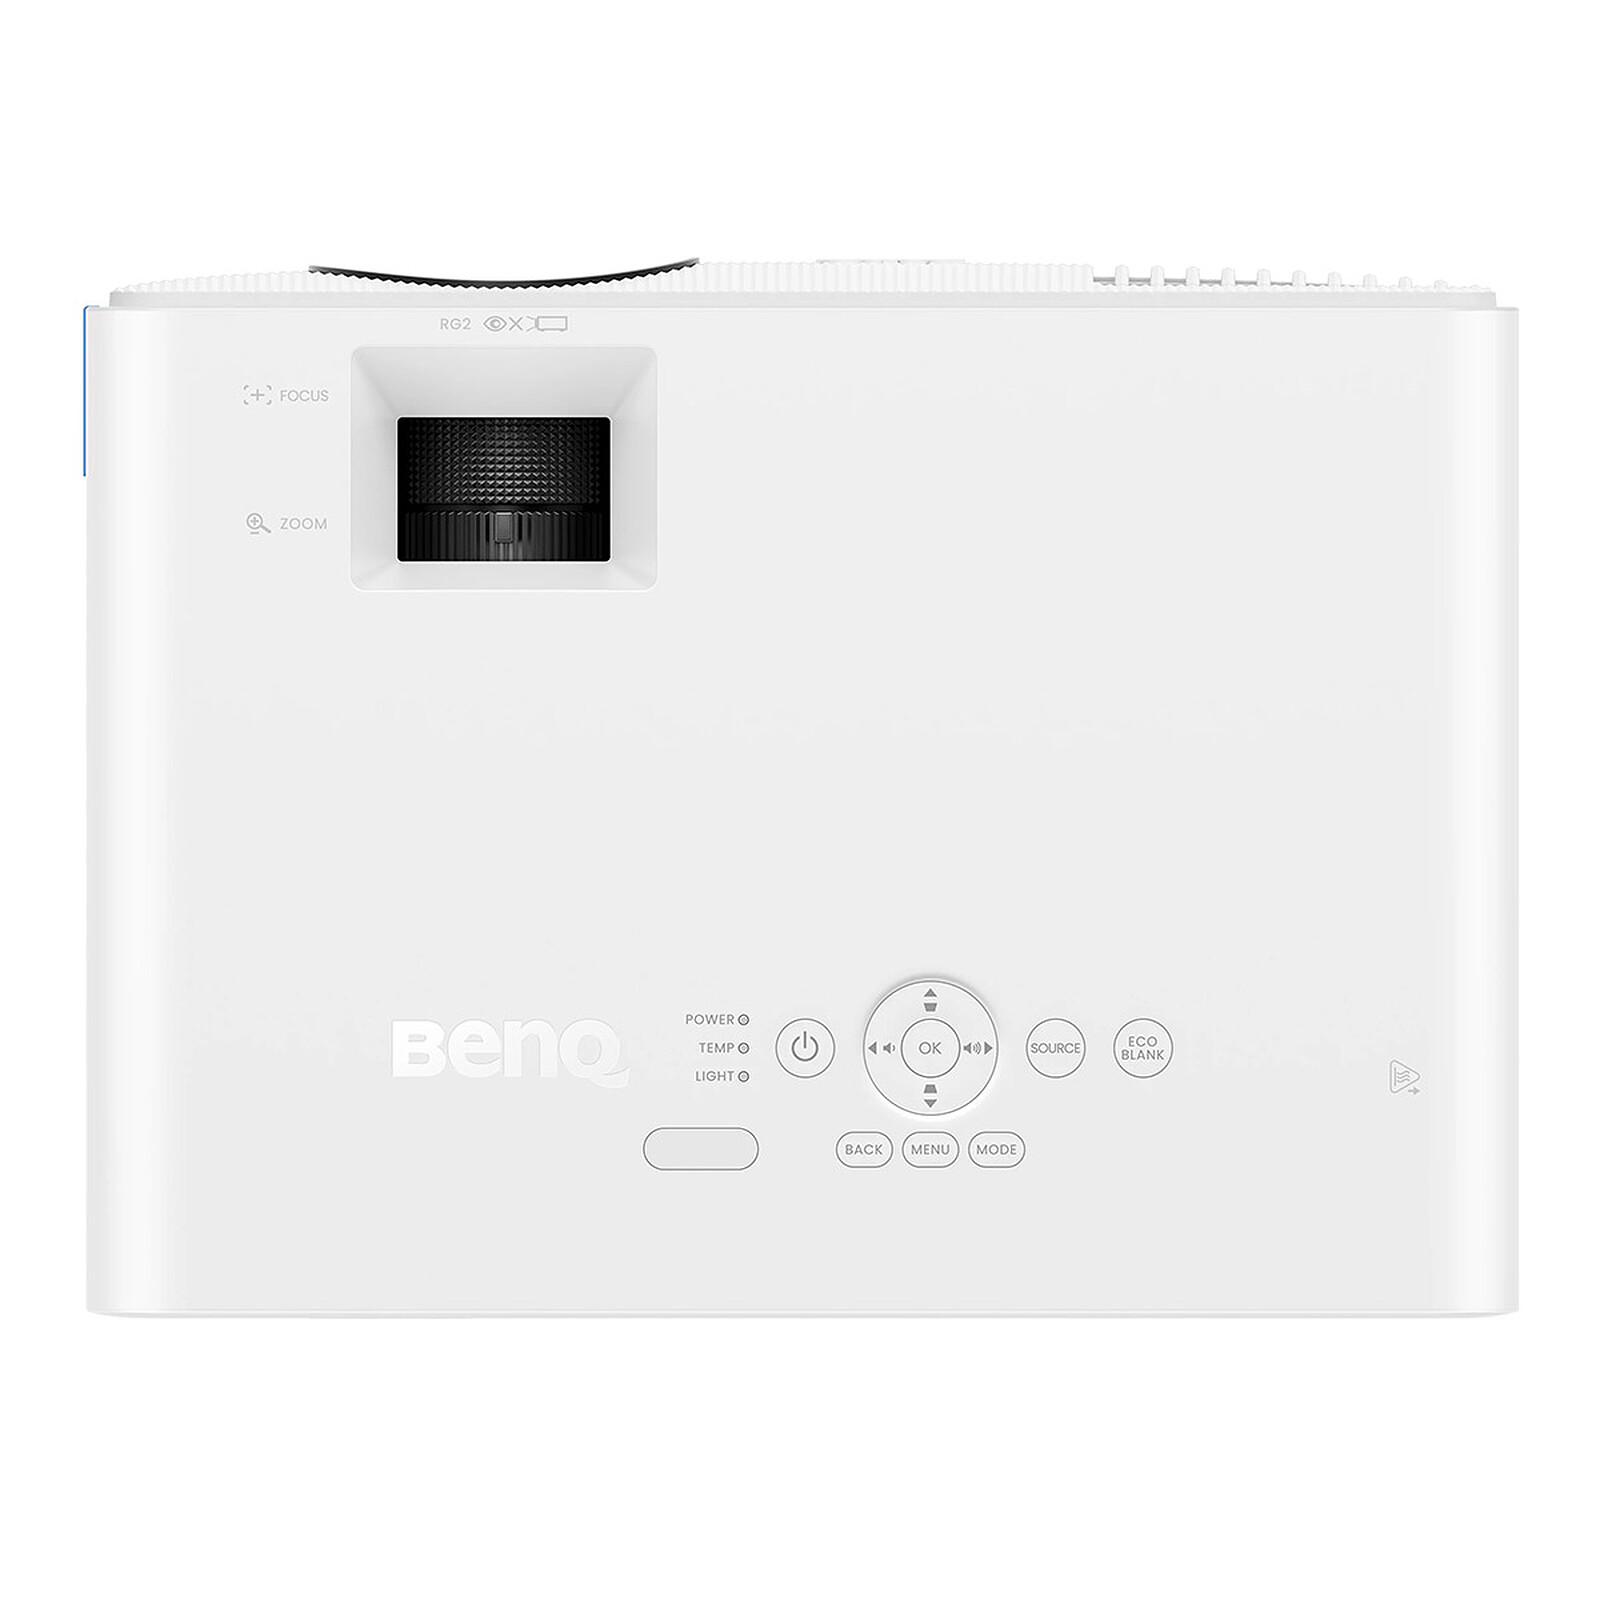 Neuer Laser-Beamer BenQ LH650 mit 4.000 ANSI Lumen und USB-C-Bildübertragung  ist besonders energieeffizient -  News